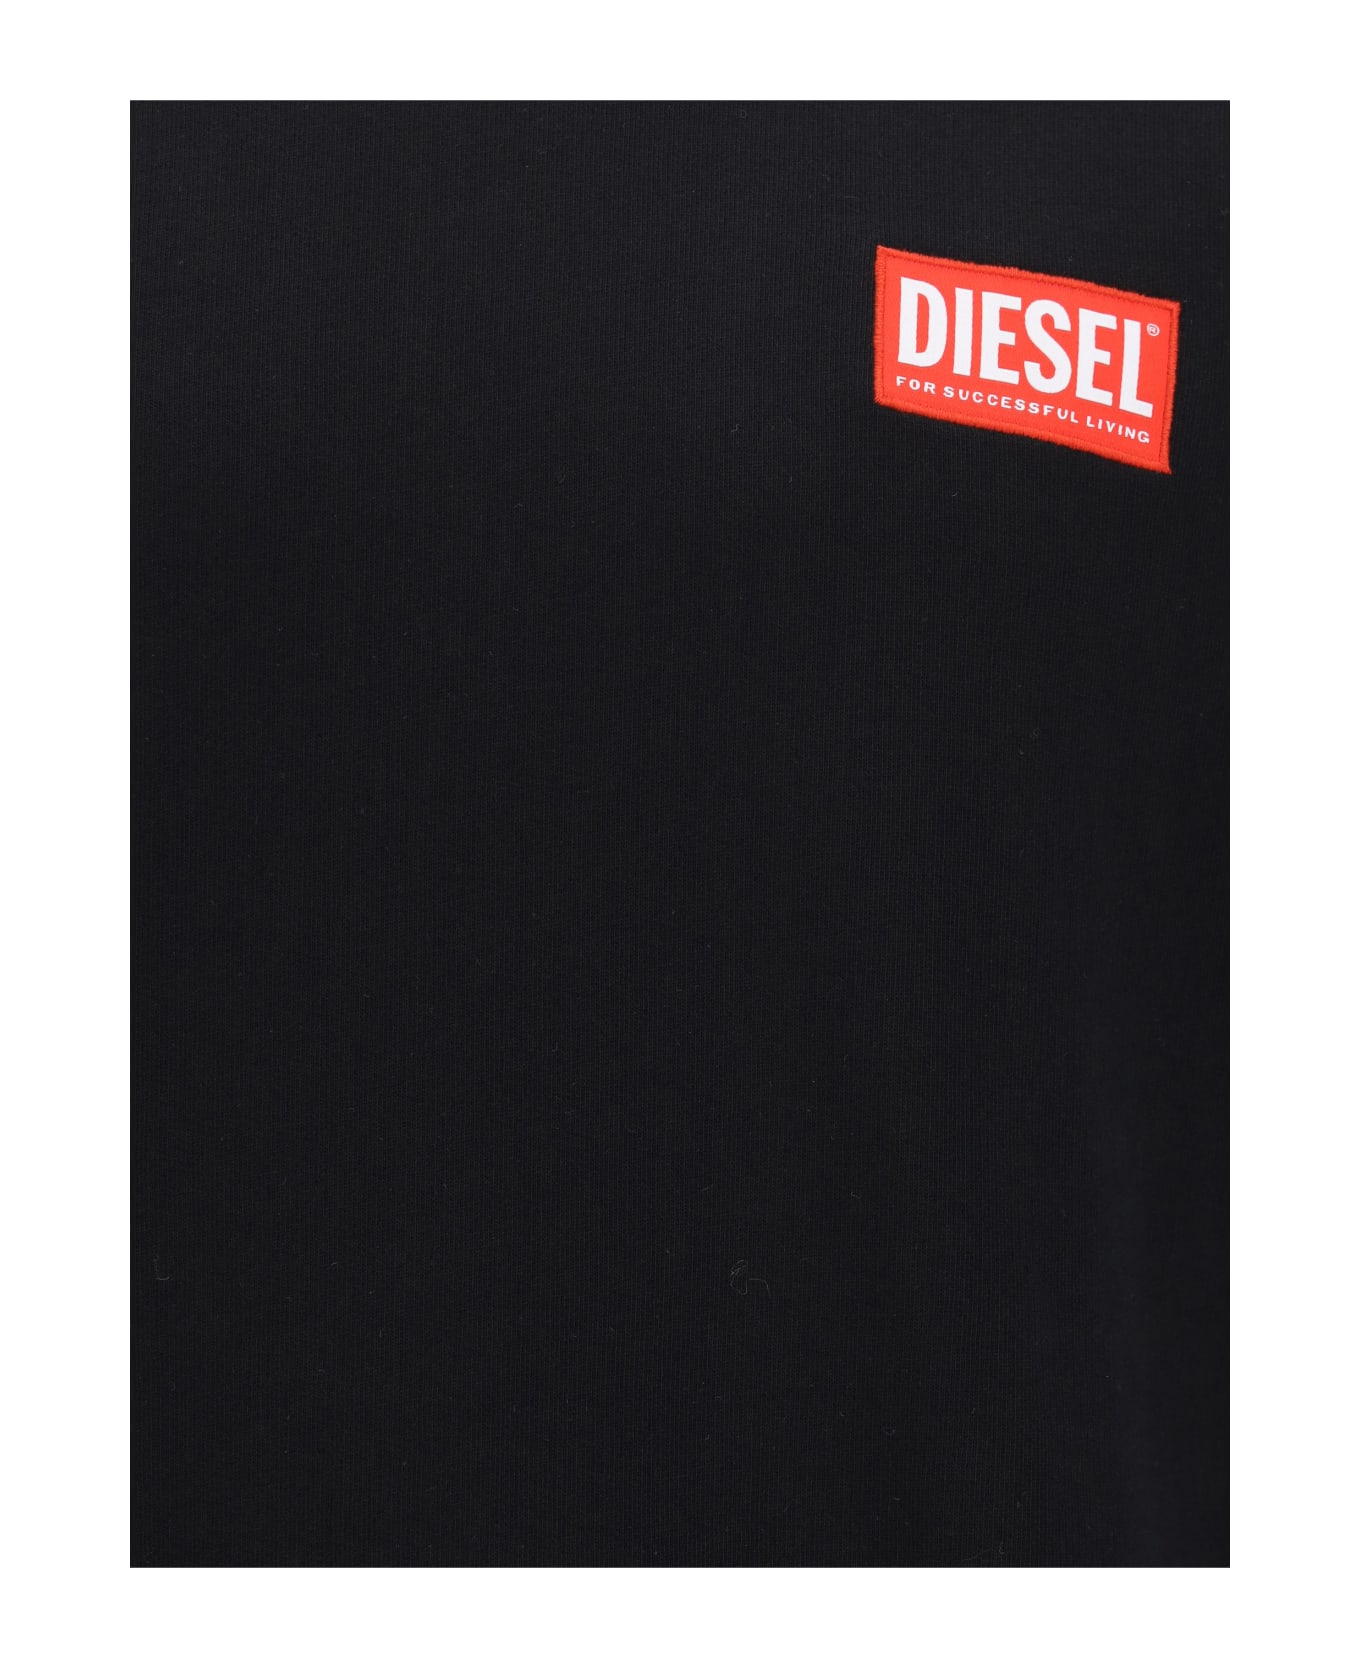 Diesel Sweatshirt - Deep/black